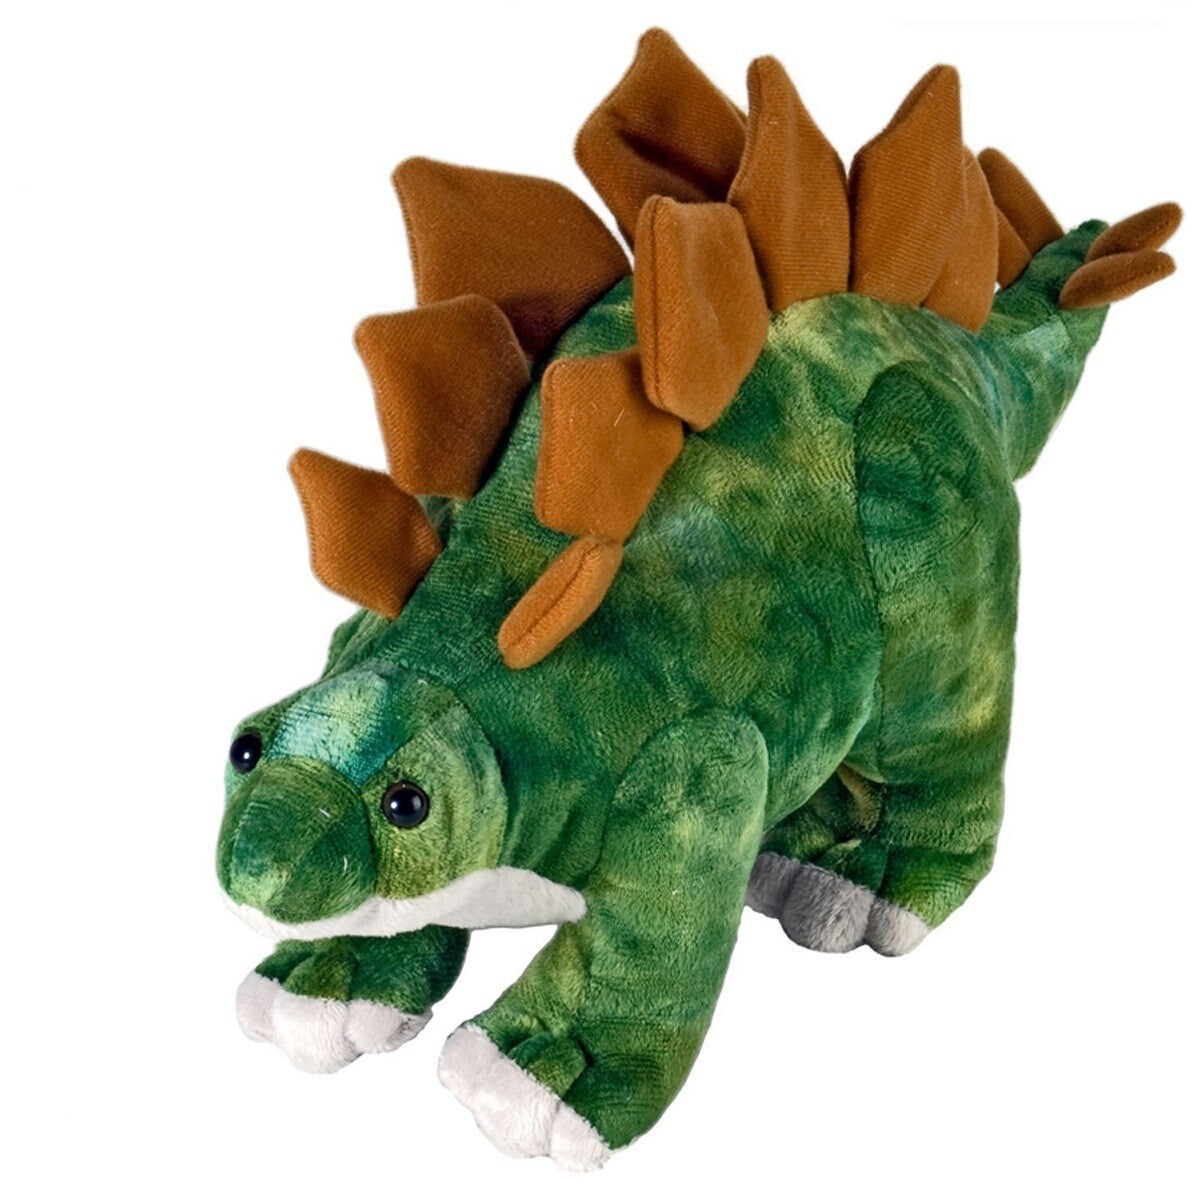 誕生日 プレゼント 恐竜 8歳 7歳 6歳 5歳 4歳 おもちゃ グッズ ステゴサウルス Tレックス トリケラトプス ブラキオサウルス アンキロサウルス リアルぬいぐるみ - 選べる 恐竜ワイルドリパブリックのぬいぐるみが運ぶ♪２バルーンセット<補充缶付・本州送料無料>